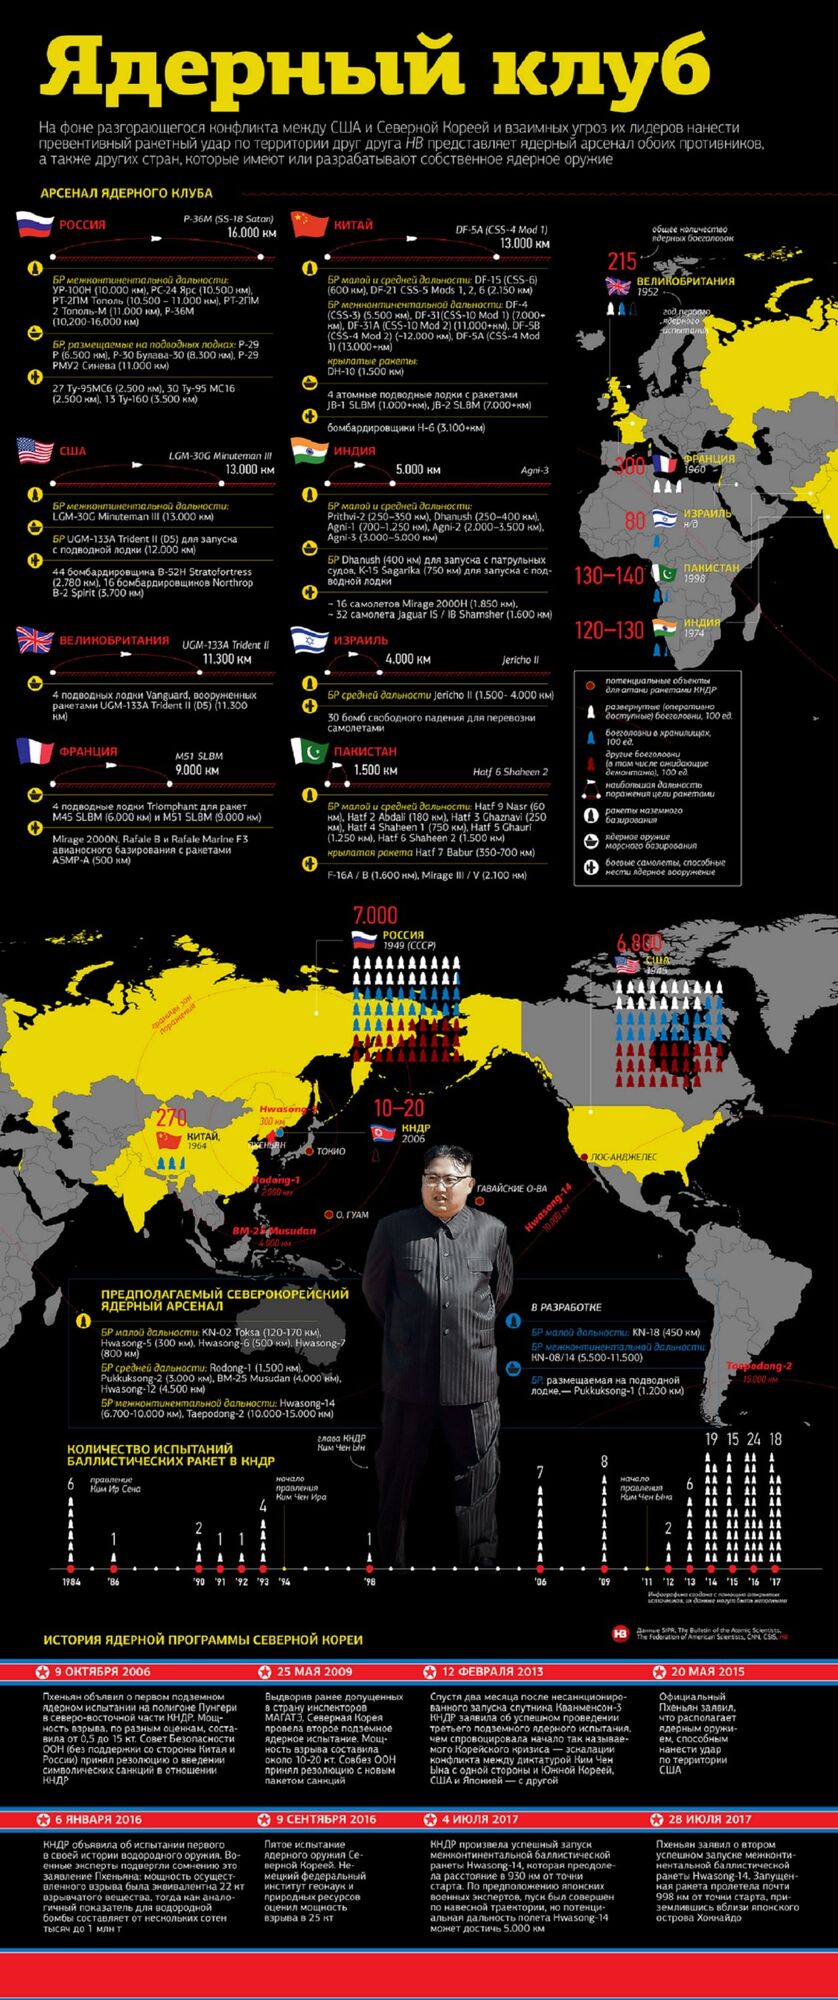 Появились данные о ядерных потенциалах США, КНДР и других стран: инфографика